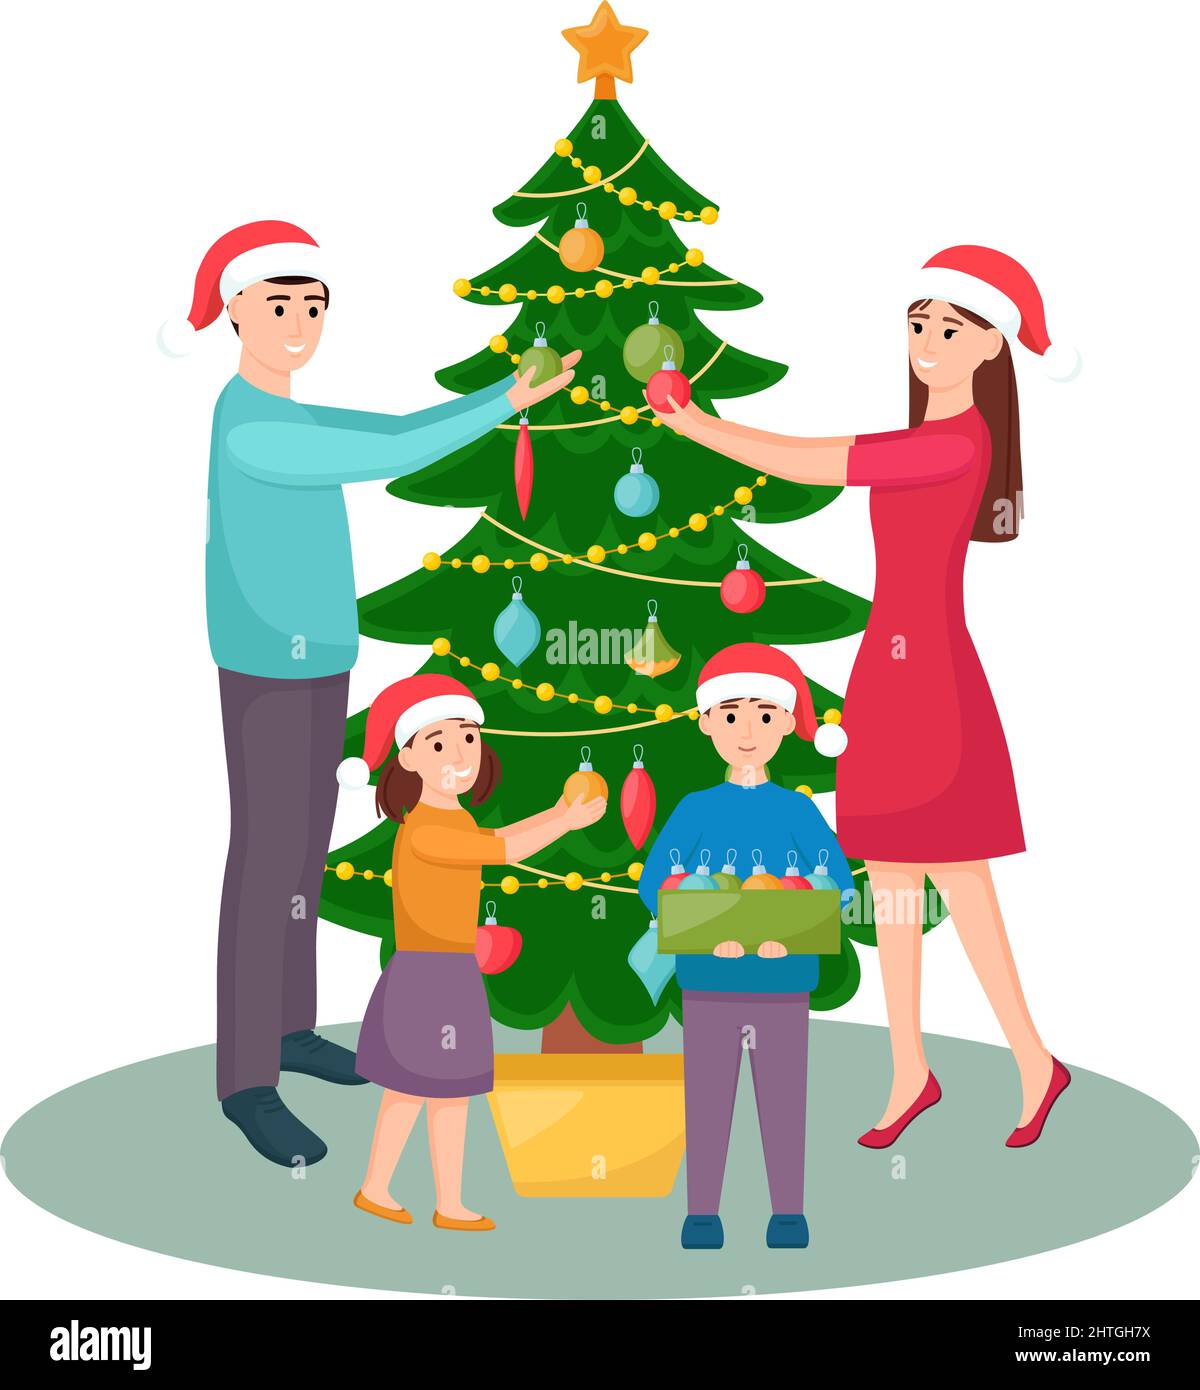 Glückliche Familie schmückt Weihnachtsbaum. Mutter, Vater, Tochter und Sohn in Weihnachtsmützen dekorieren Tannenbaum, Vektor-Illustration Stock Vektor